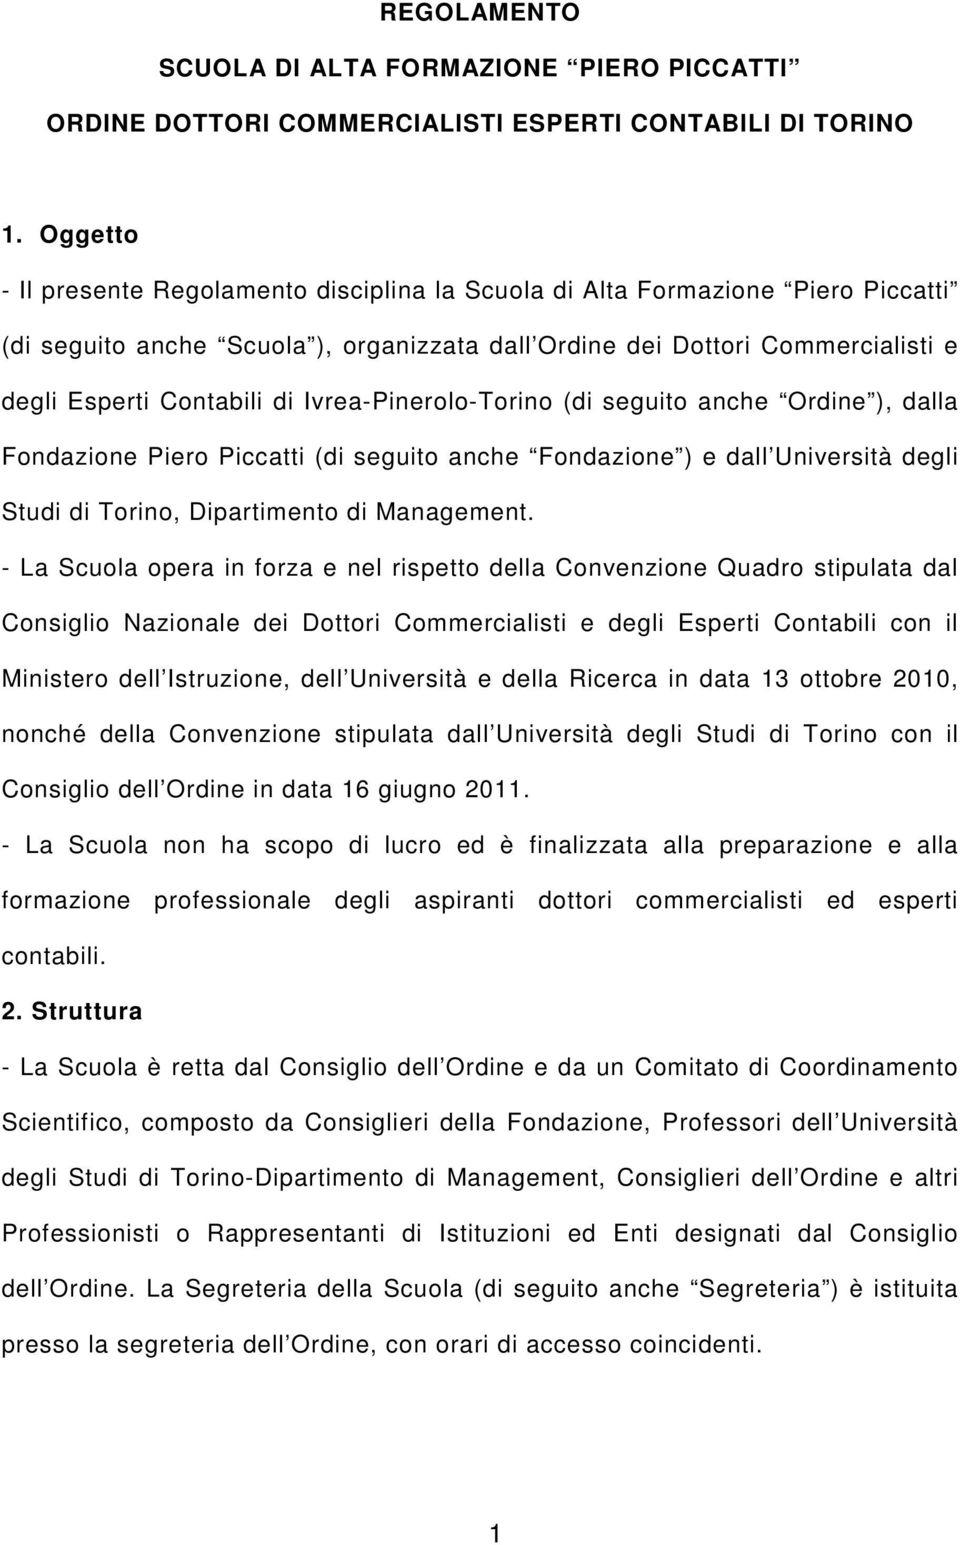 Ivrea-Pinerolo-Torino (di seguito anche Ordine ), dalla Fondazione Piero Piccatti (di seguito anche Fondazione ) e dall Università degli Studi di Torino, Dipartimento di Management.